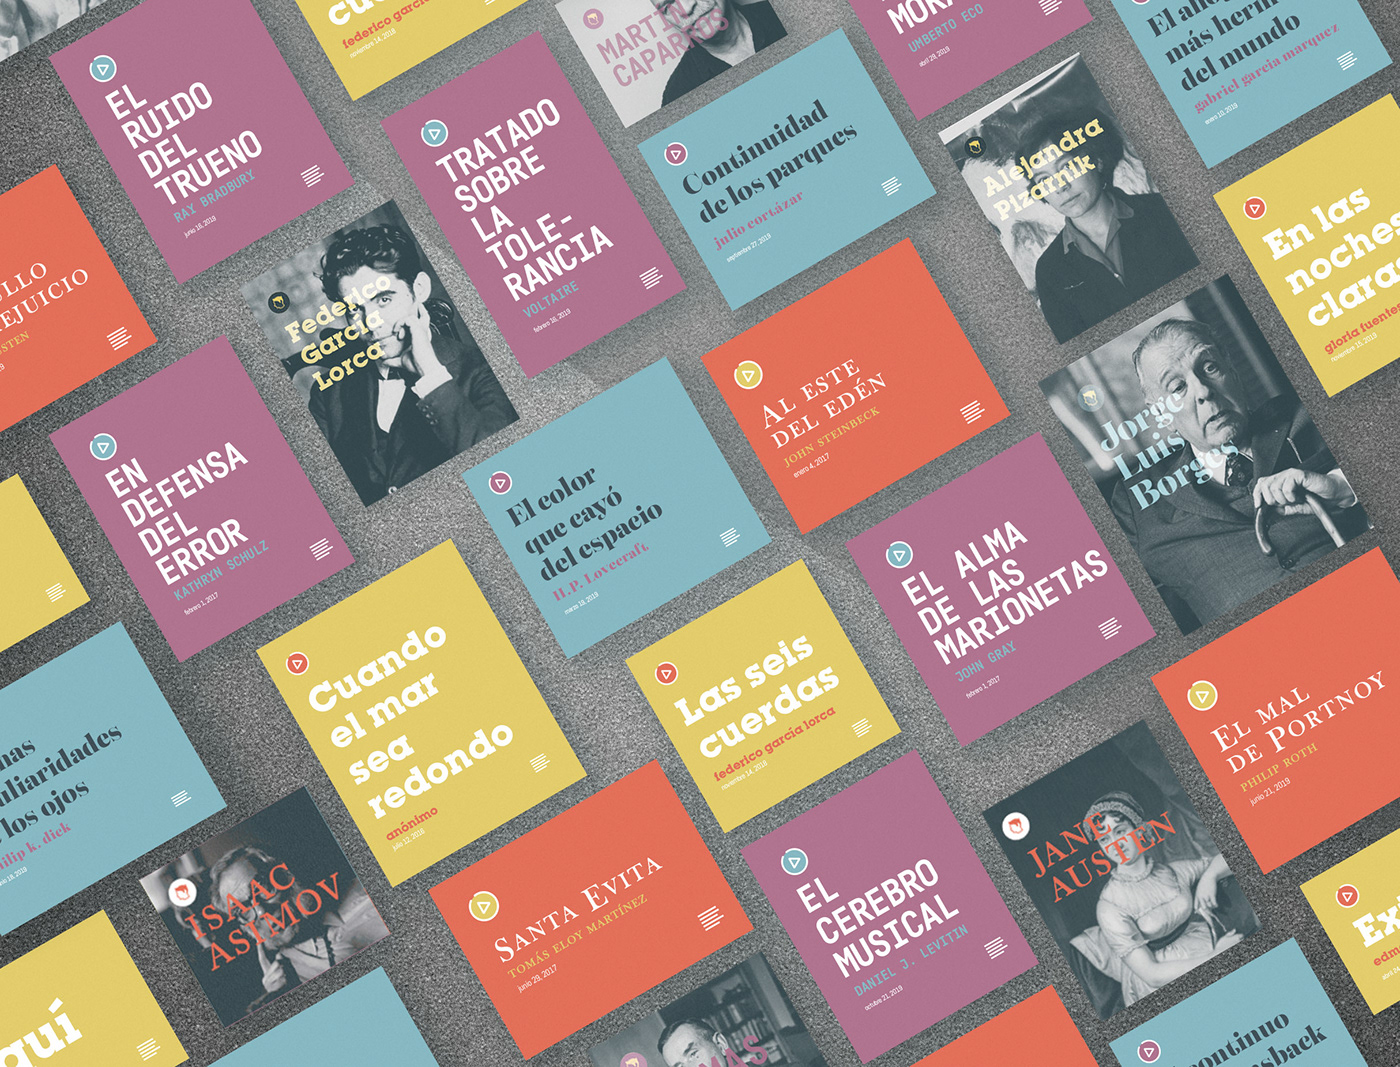 Adan Farias audiobooks authors branding  graphic design  literature podcast posters Quotes Website Concept